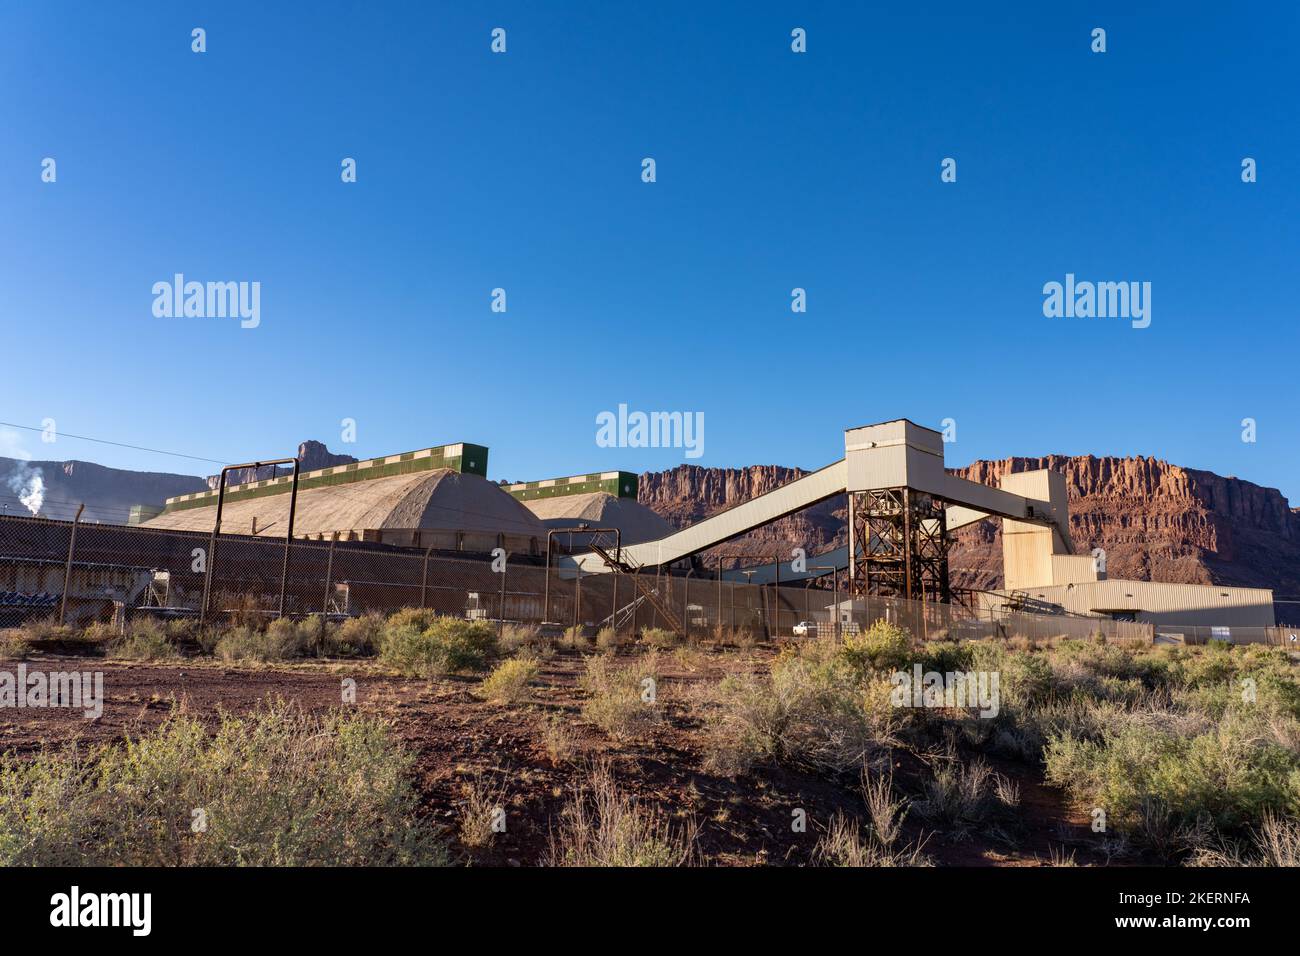 Instalaciones de carga y almacenamiento de vagones ferroviarios en la planta de procesamiento de una mina de potasa utilizando un método de extracción de soluciones cerca de Moab, Utah. Foto de stock